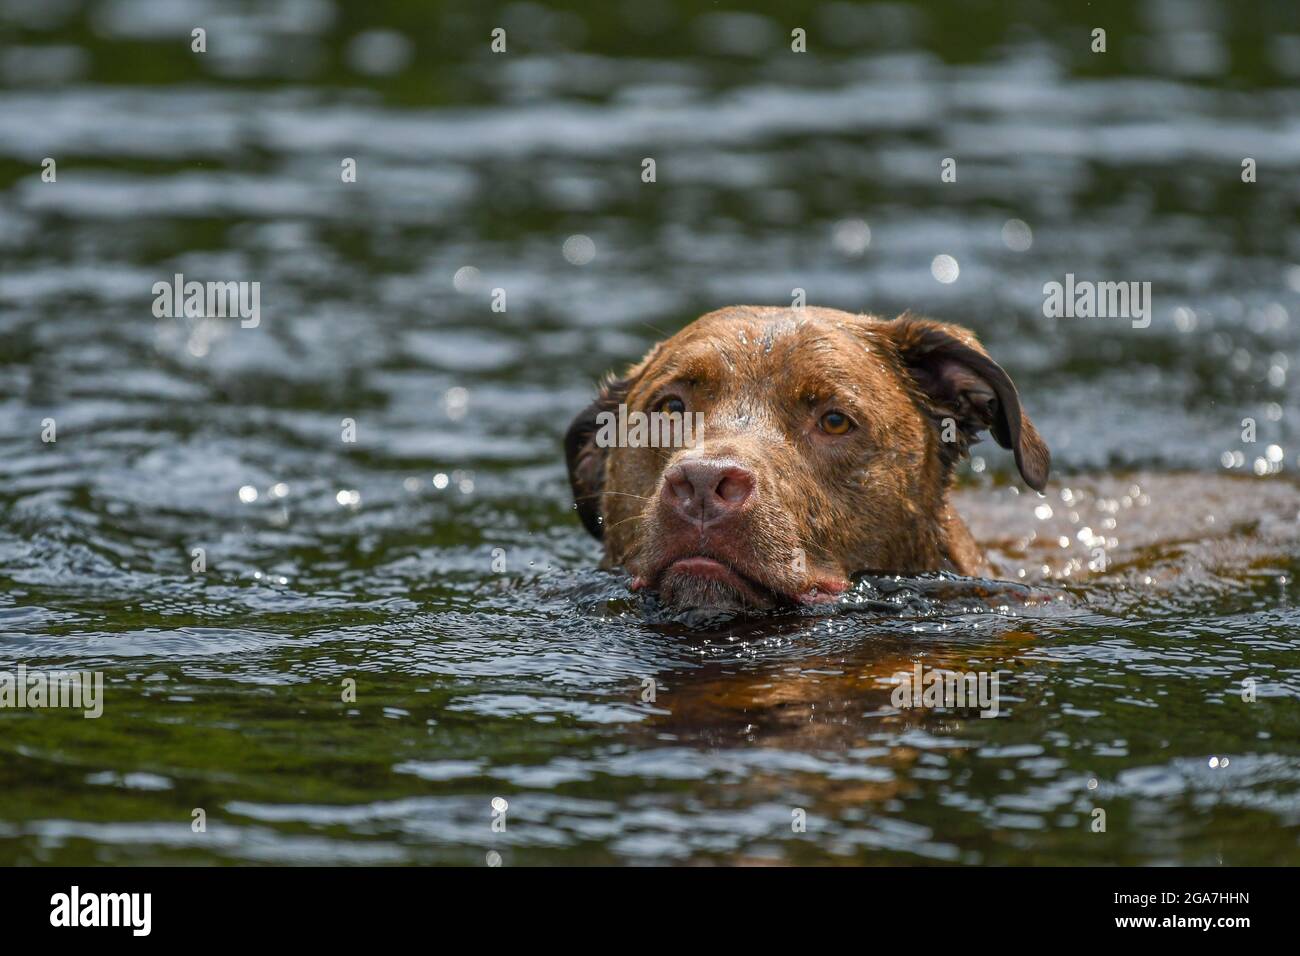 Ein Hund schwimmt in einem Fluss / See - Canis lupus vertraut schwimmt und spielt im Wasser Stockfoto